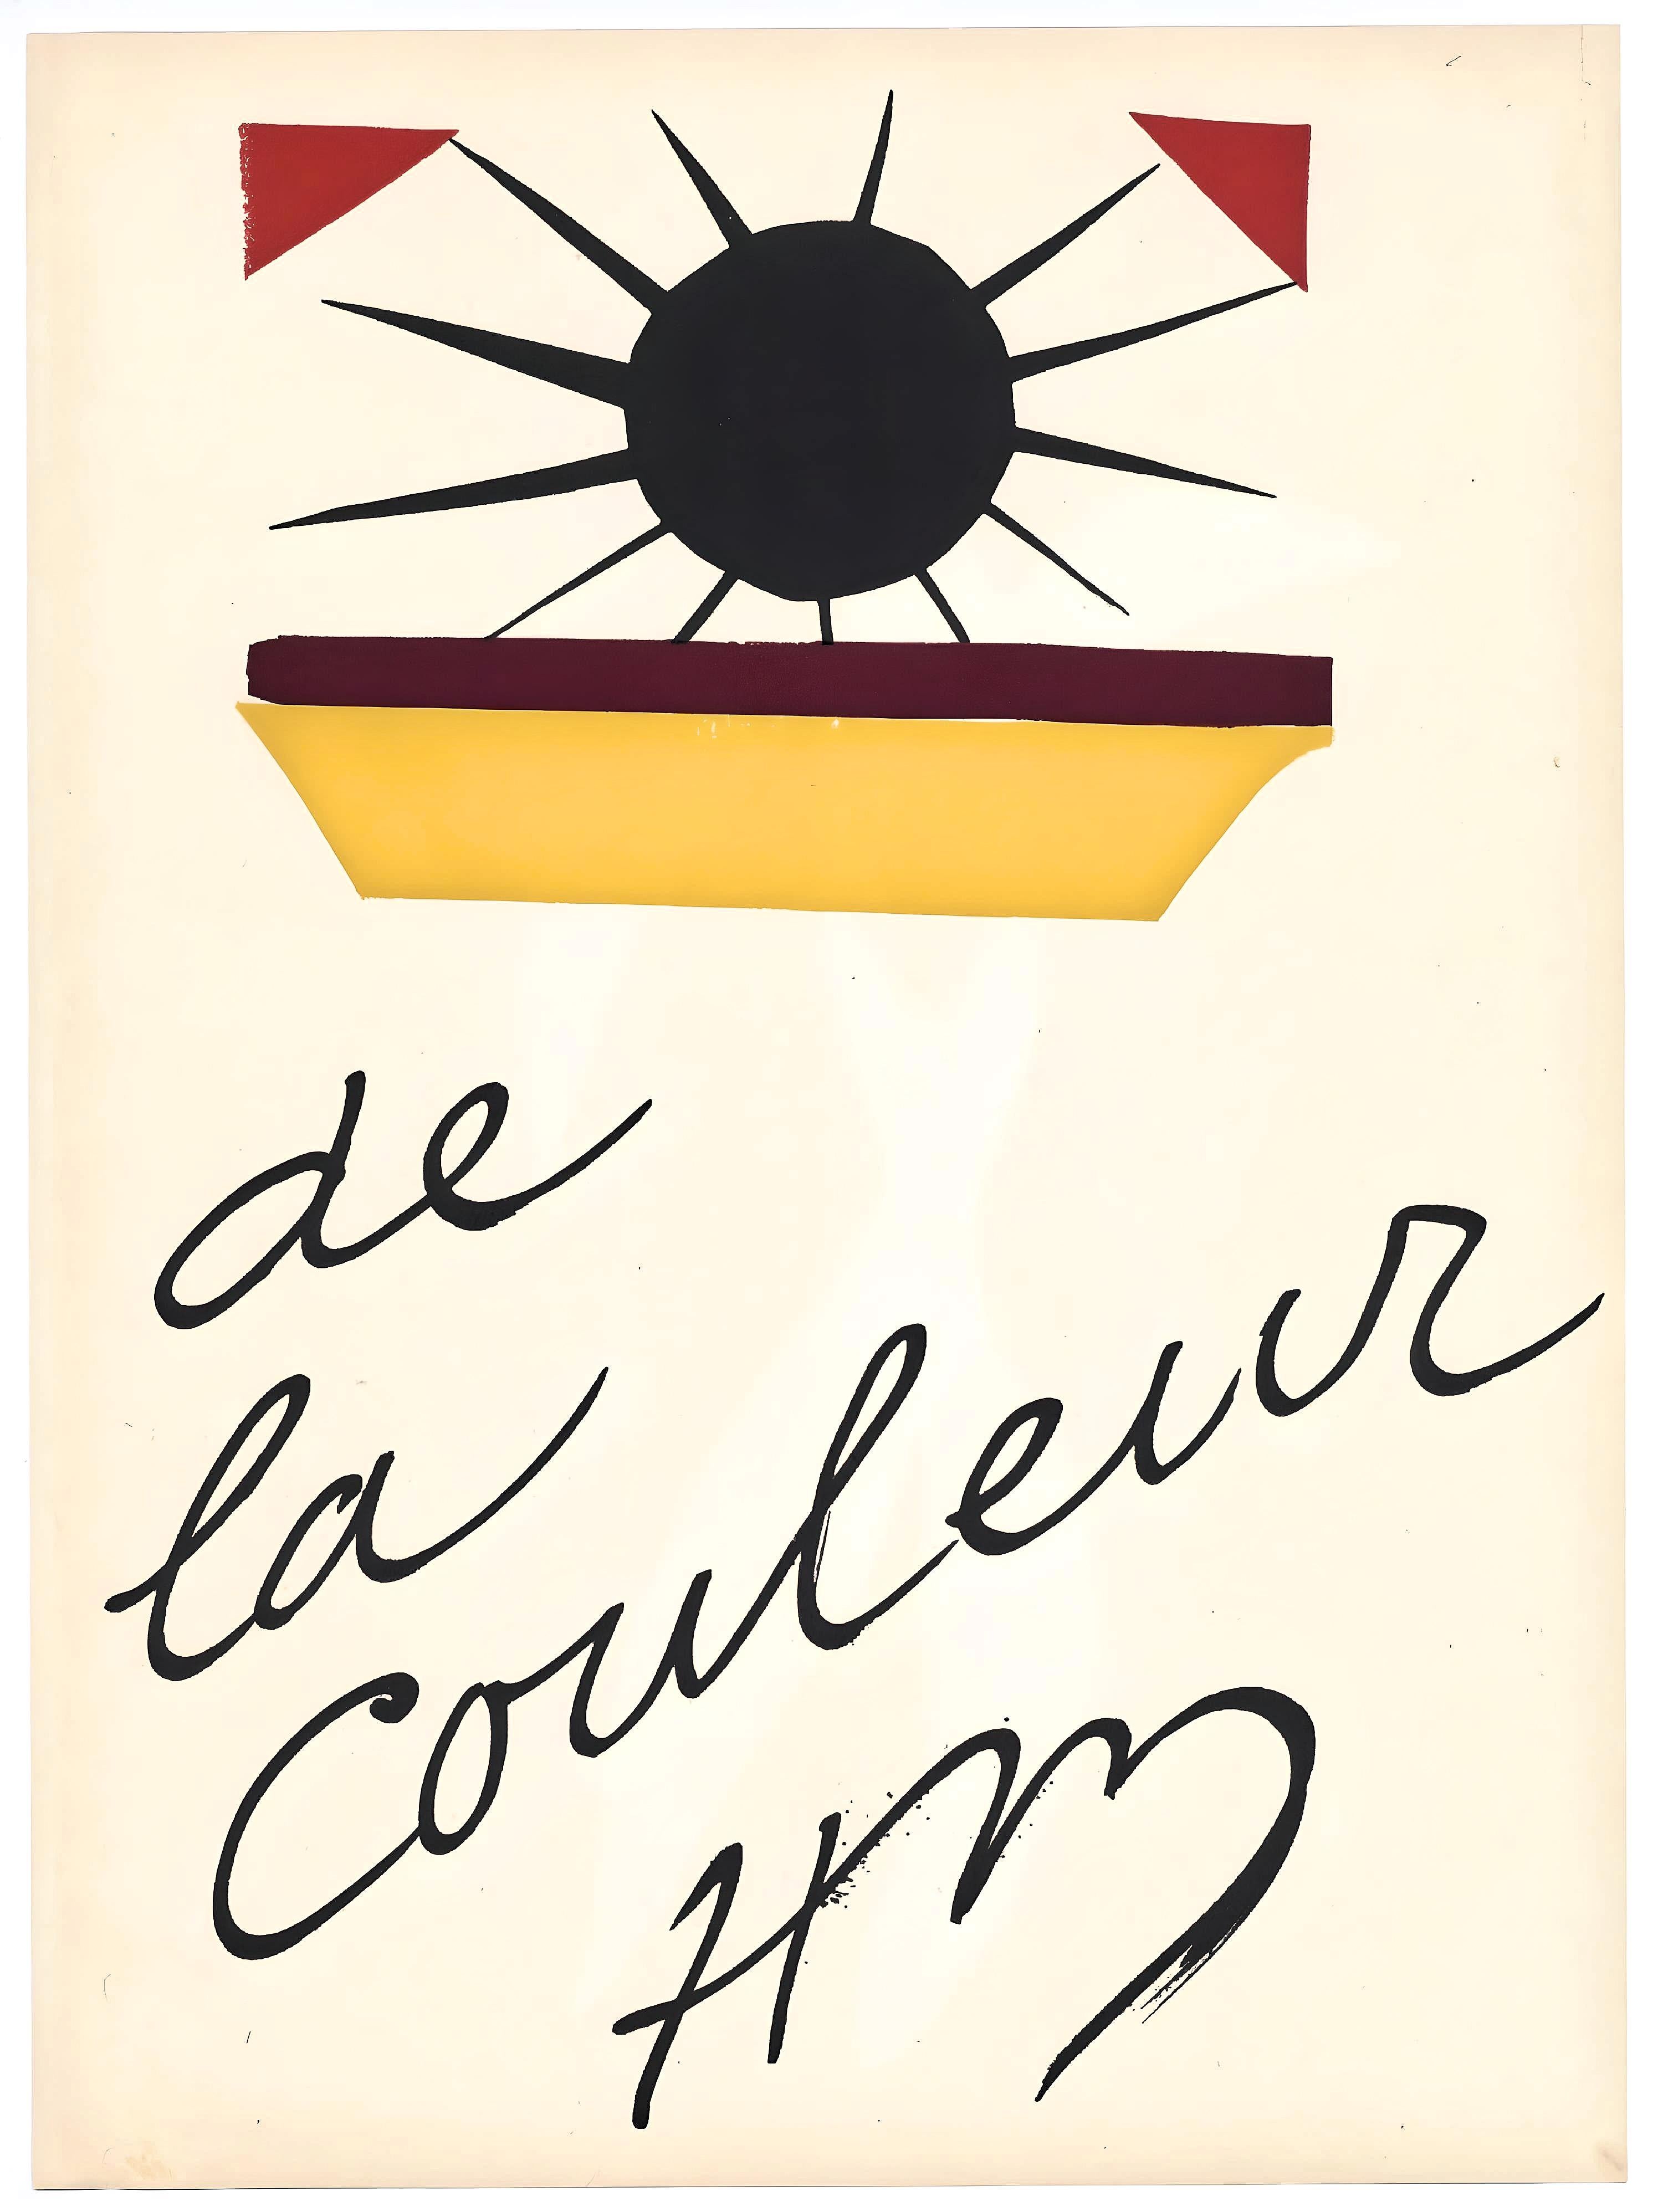 Matisse, De la Couleur, Verve: Revue Artistique et Littéraire (after) - Modern Print by Henri Matisse